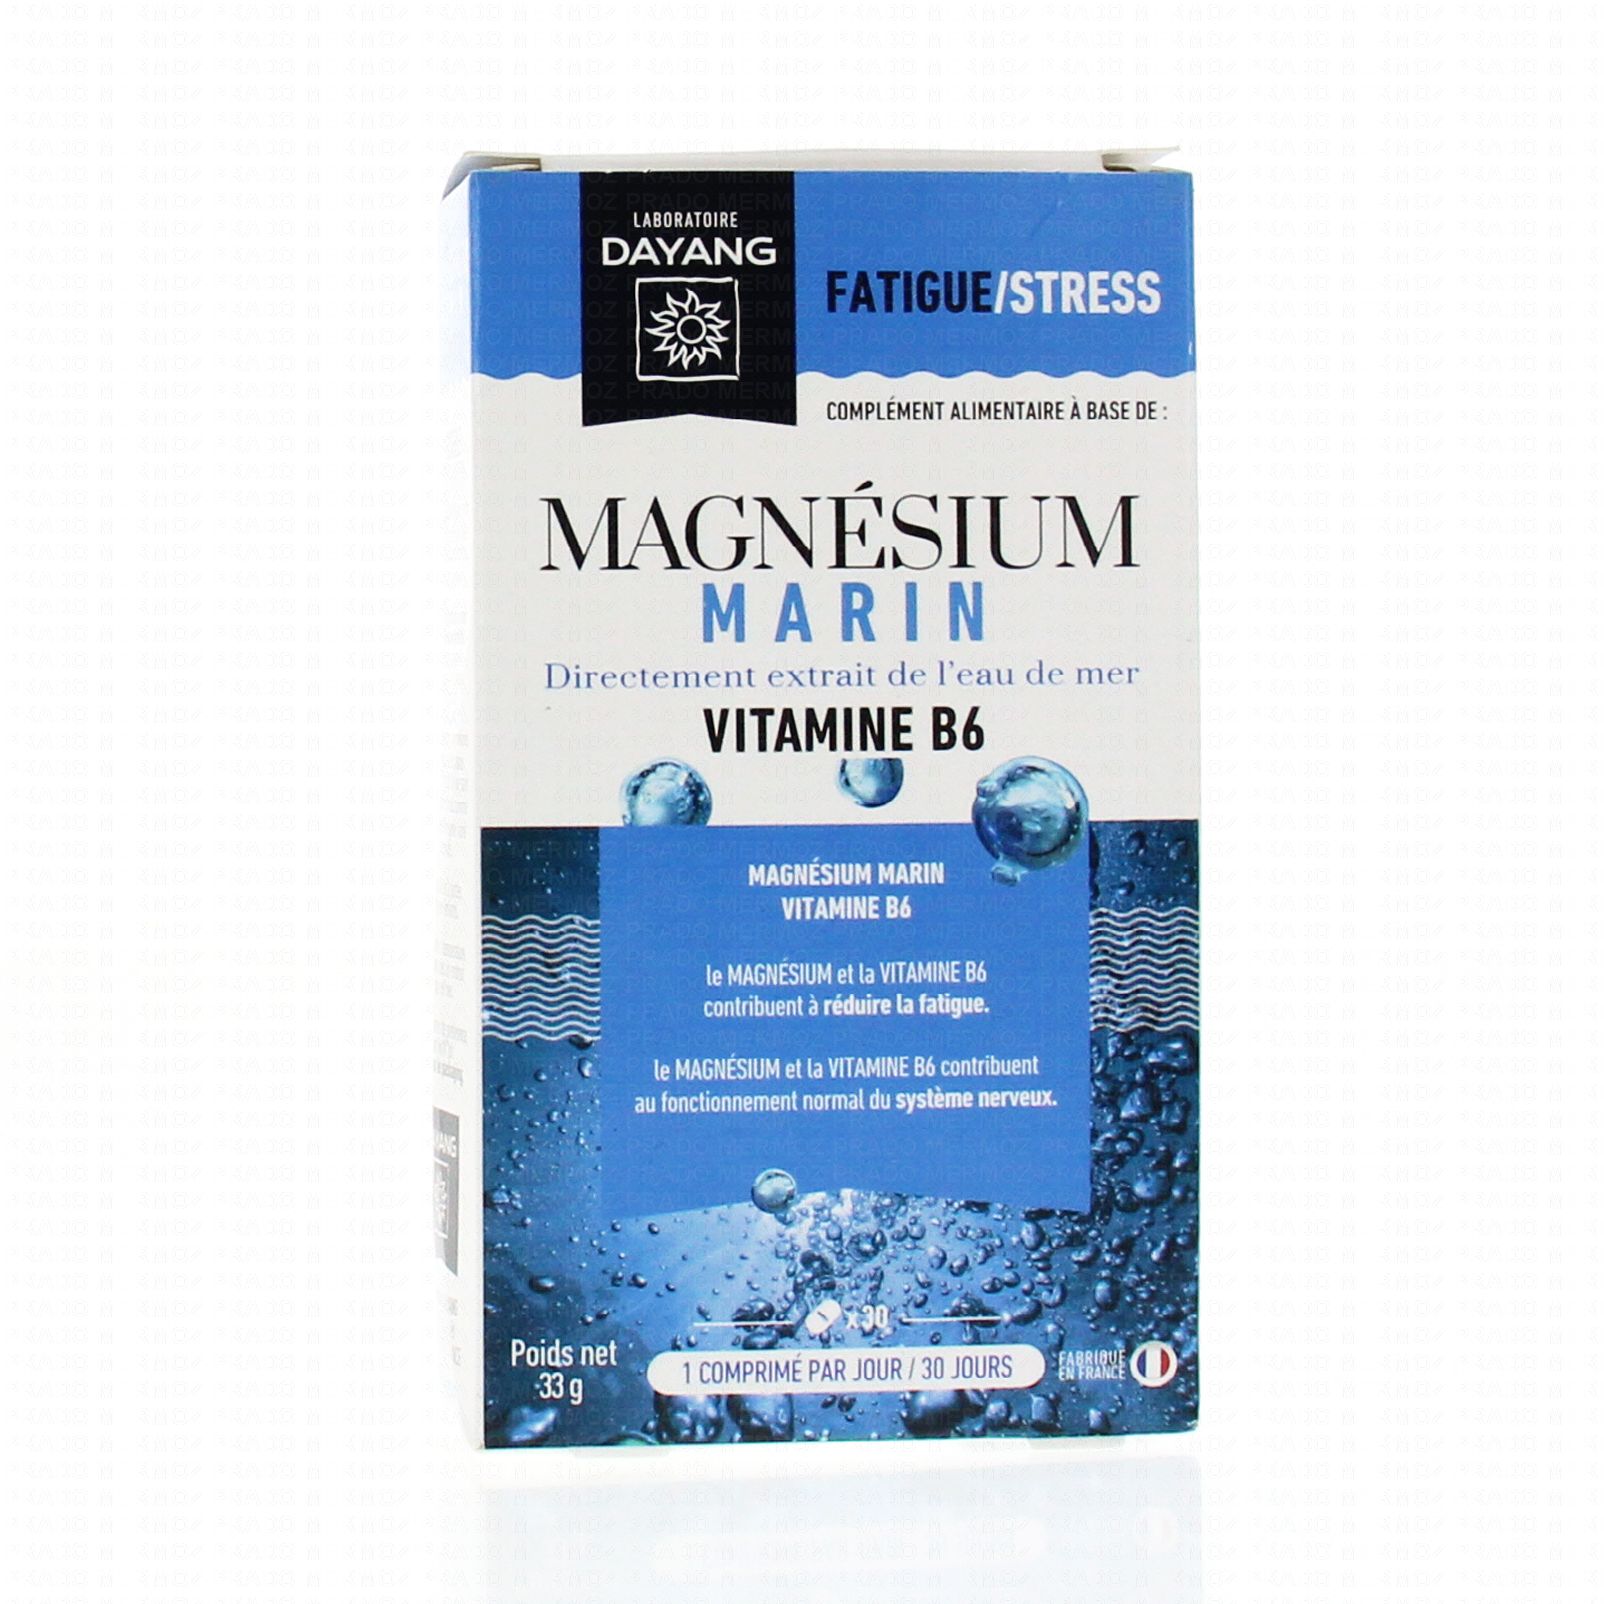 DAYANG Magnésium marin